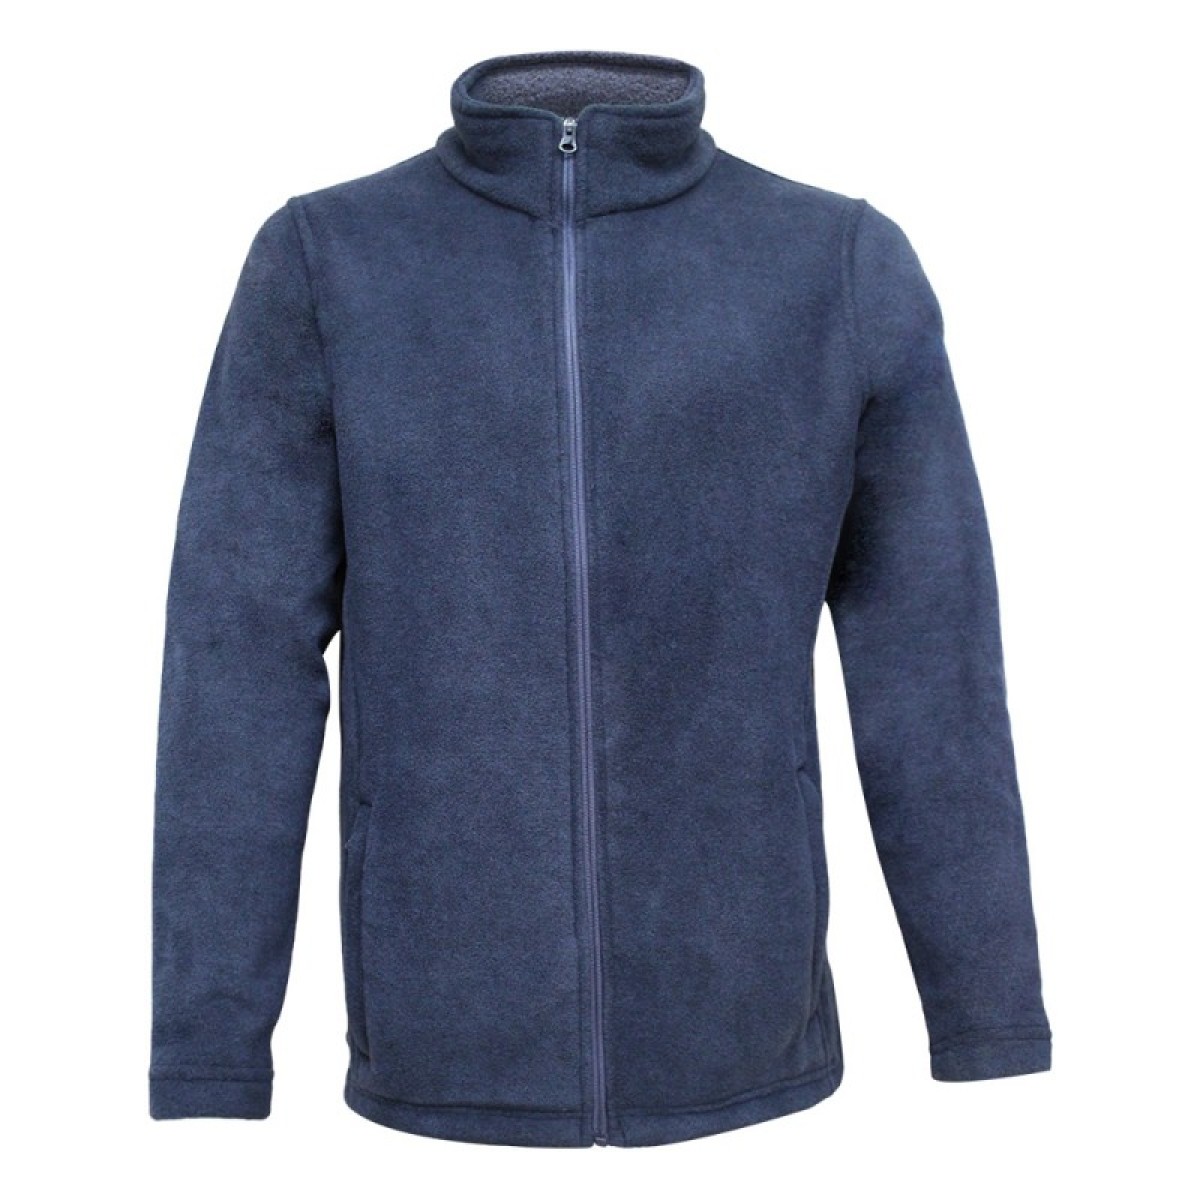 men-fleece-jacket-kfj05772-5a-1